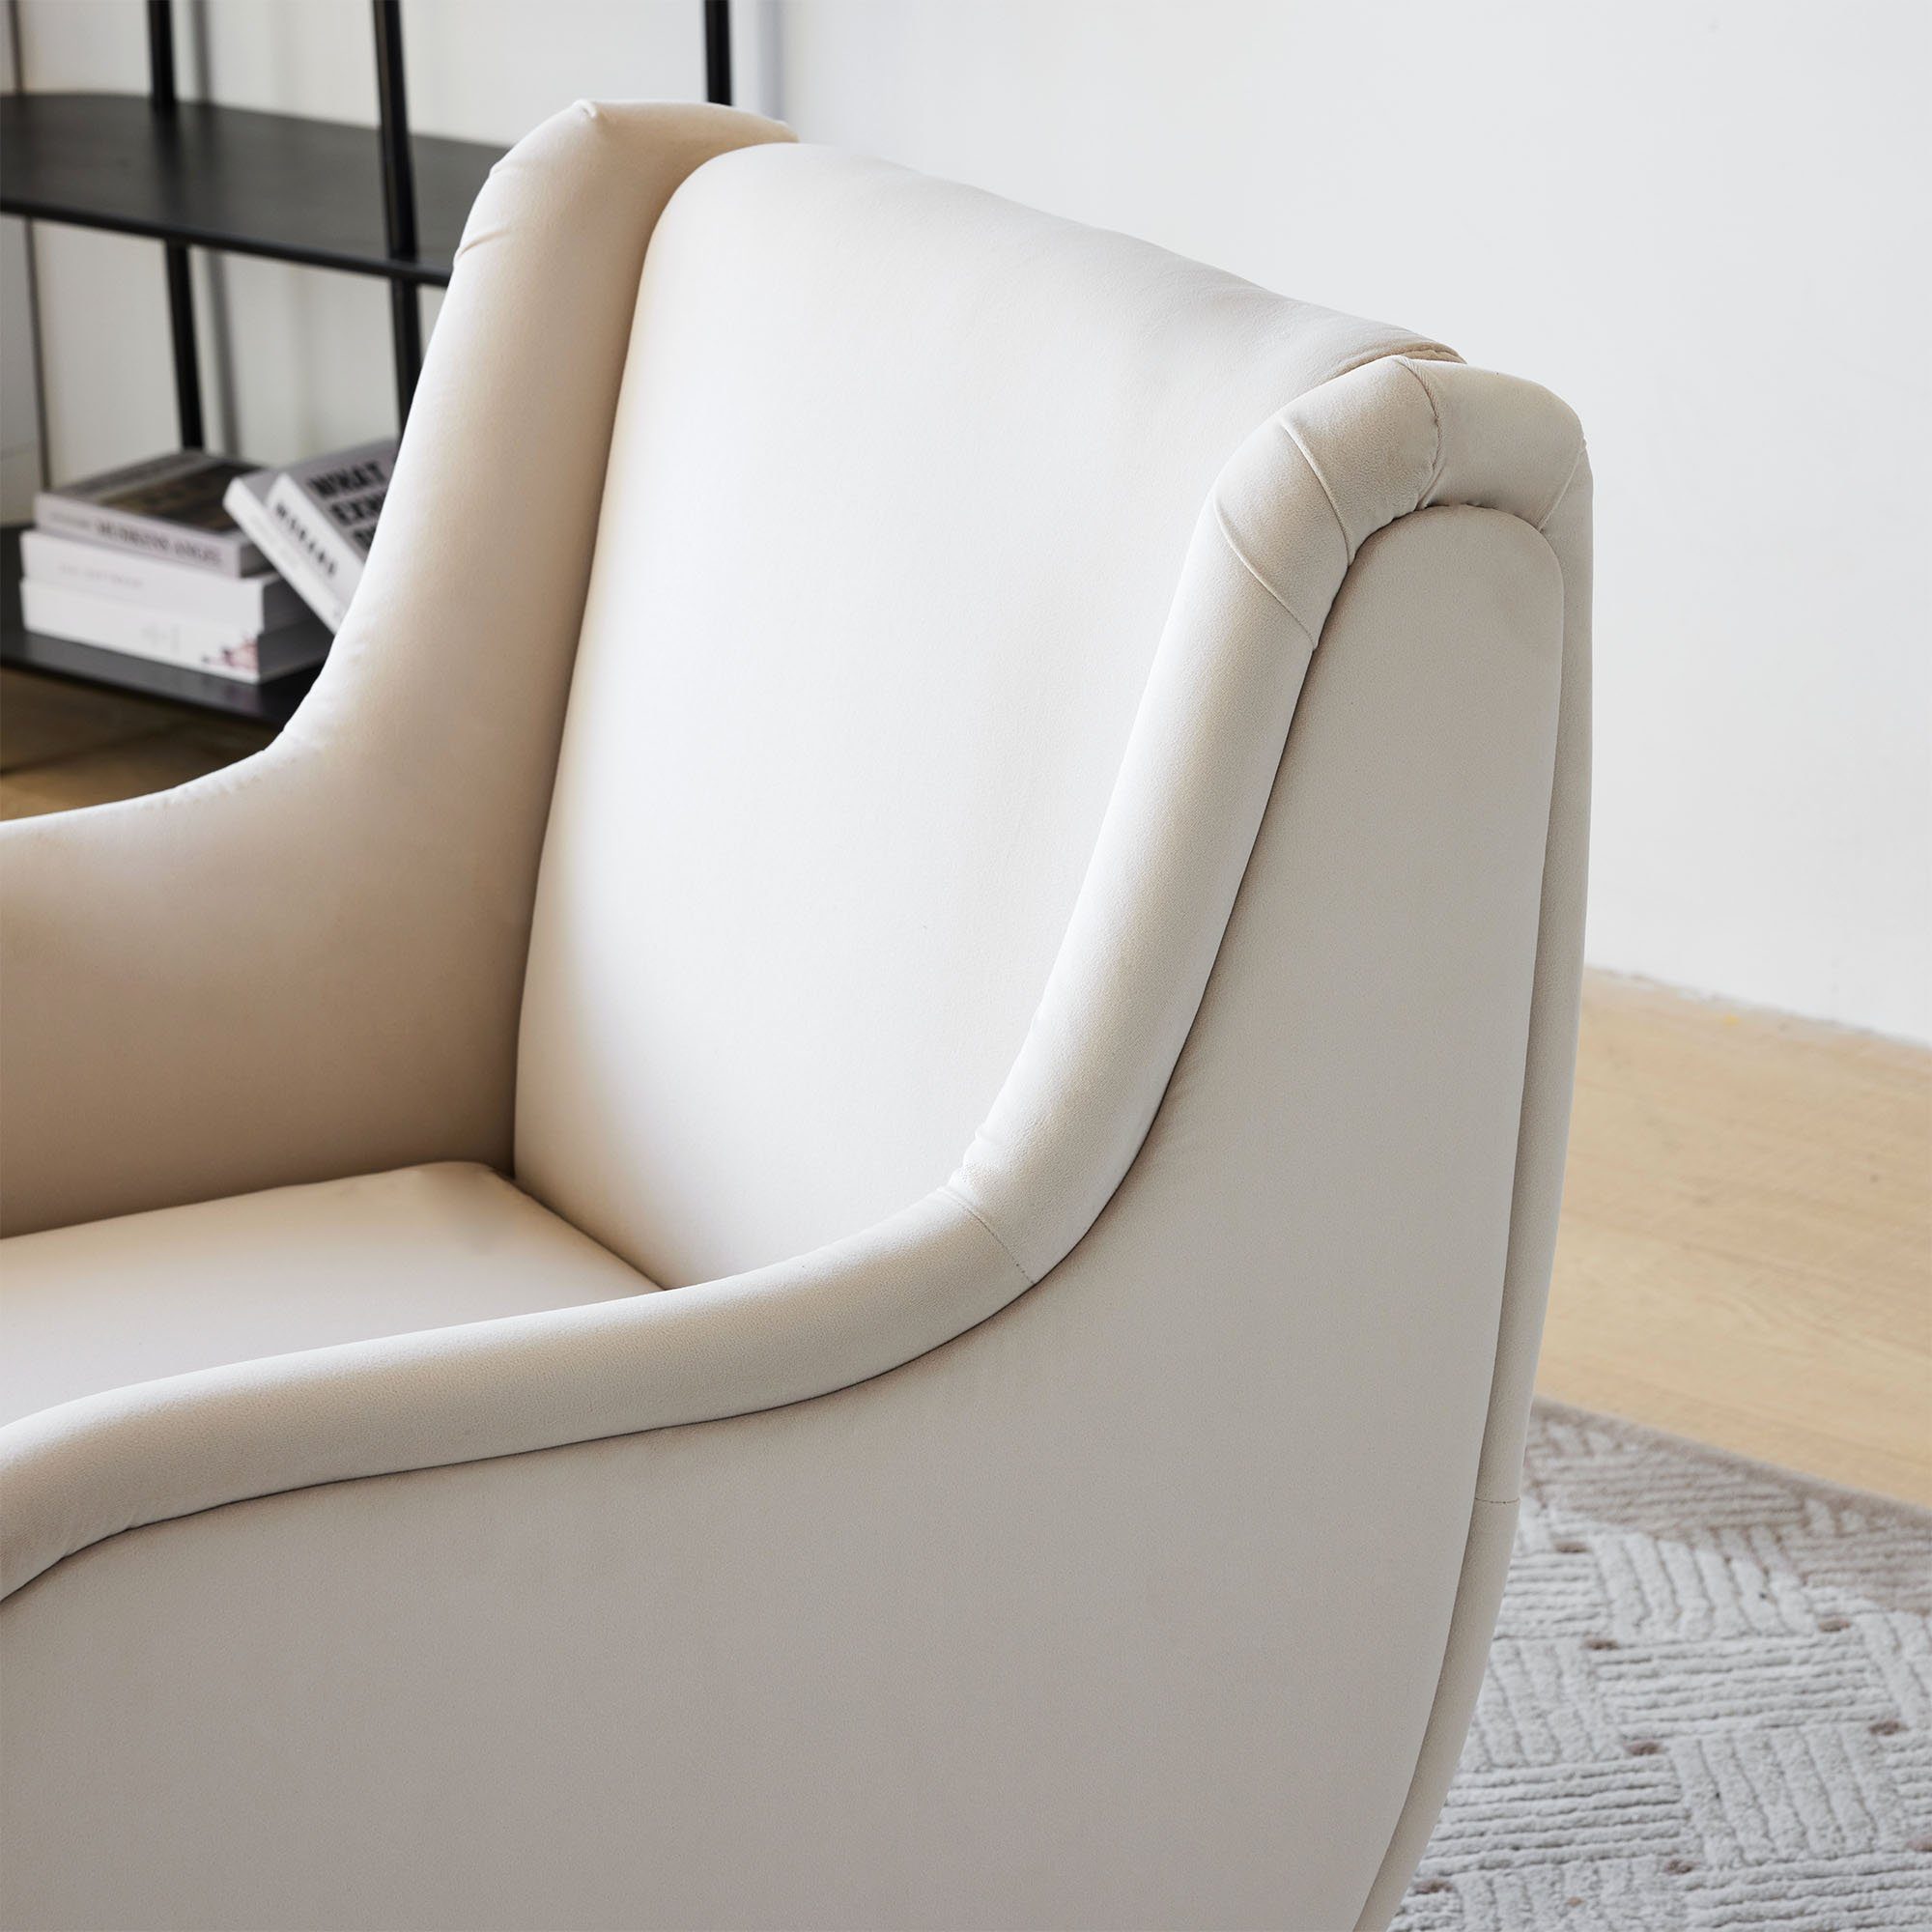 Samtstuhl Rückenlehne, Relaxsessel Stil, (Wohnzimmer-Freizeitsessel beige hoher Metallbeinarmlehne), mit mit im Polstersessel Sessel OKWISH Loungesessel modernen Samtstuhl,